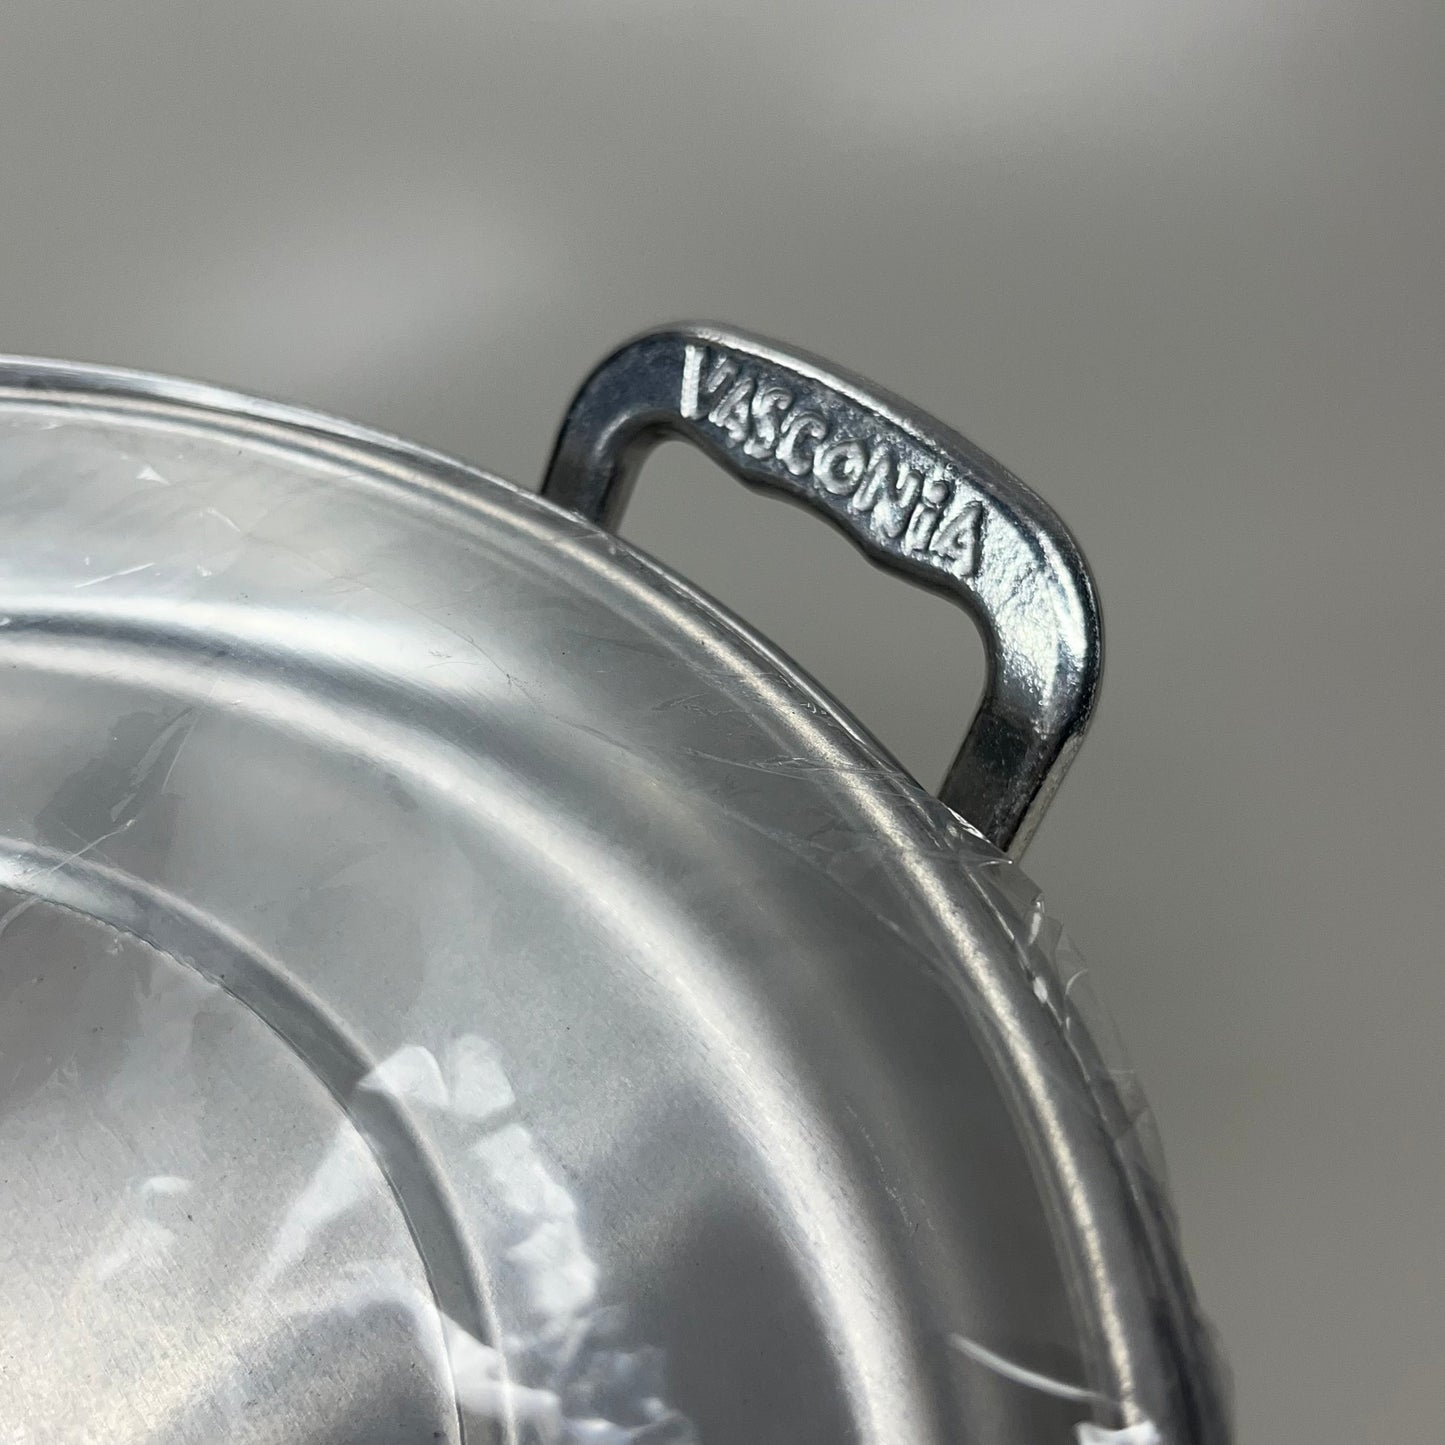 VASCONIA Steamer-pot Aluminum Stainless 16 Quart #713411